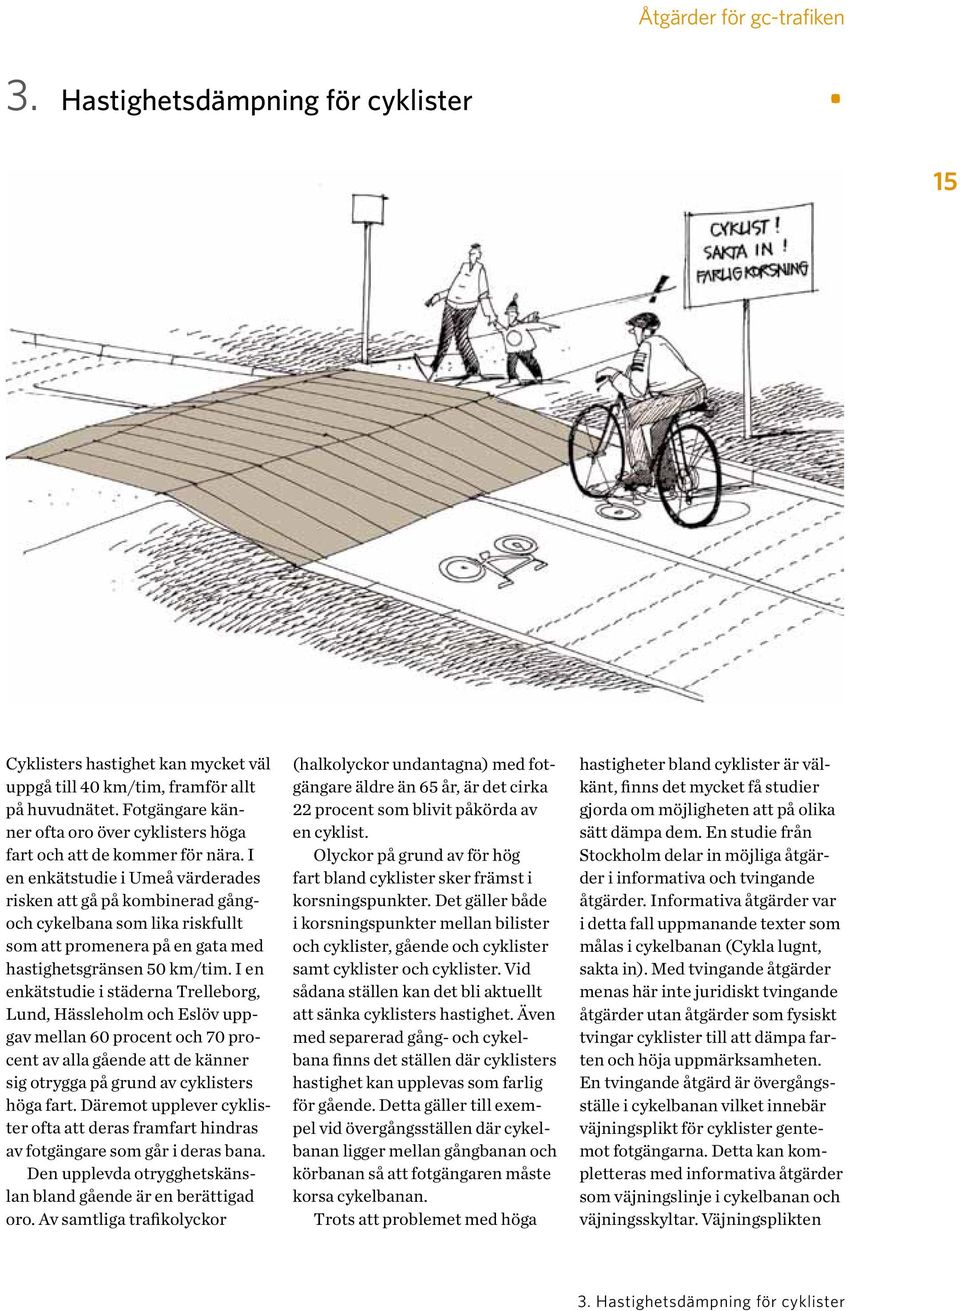 I en enkätstudie i Umeå värderades risken att gå på kombinerad gångoch cykelbana som lika riskfullt som att promenera på en gata med hastighetsgränsen 50 km/tim.